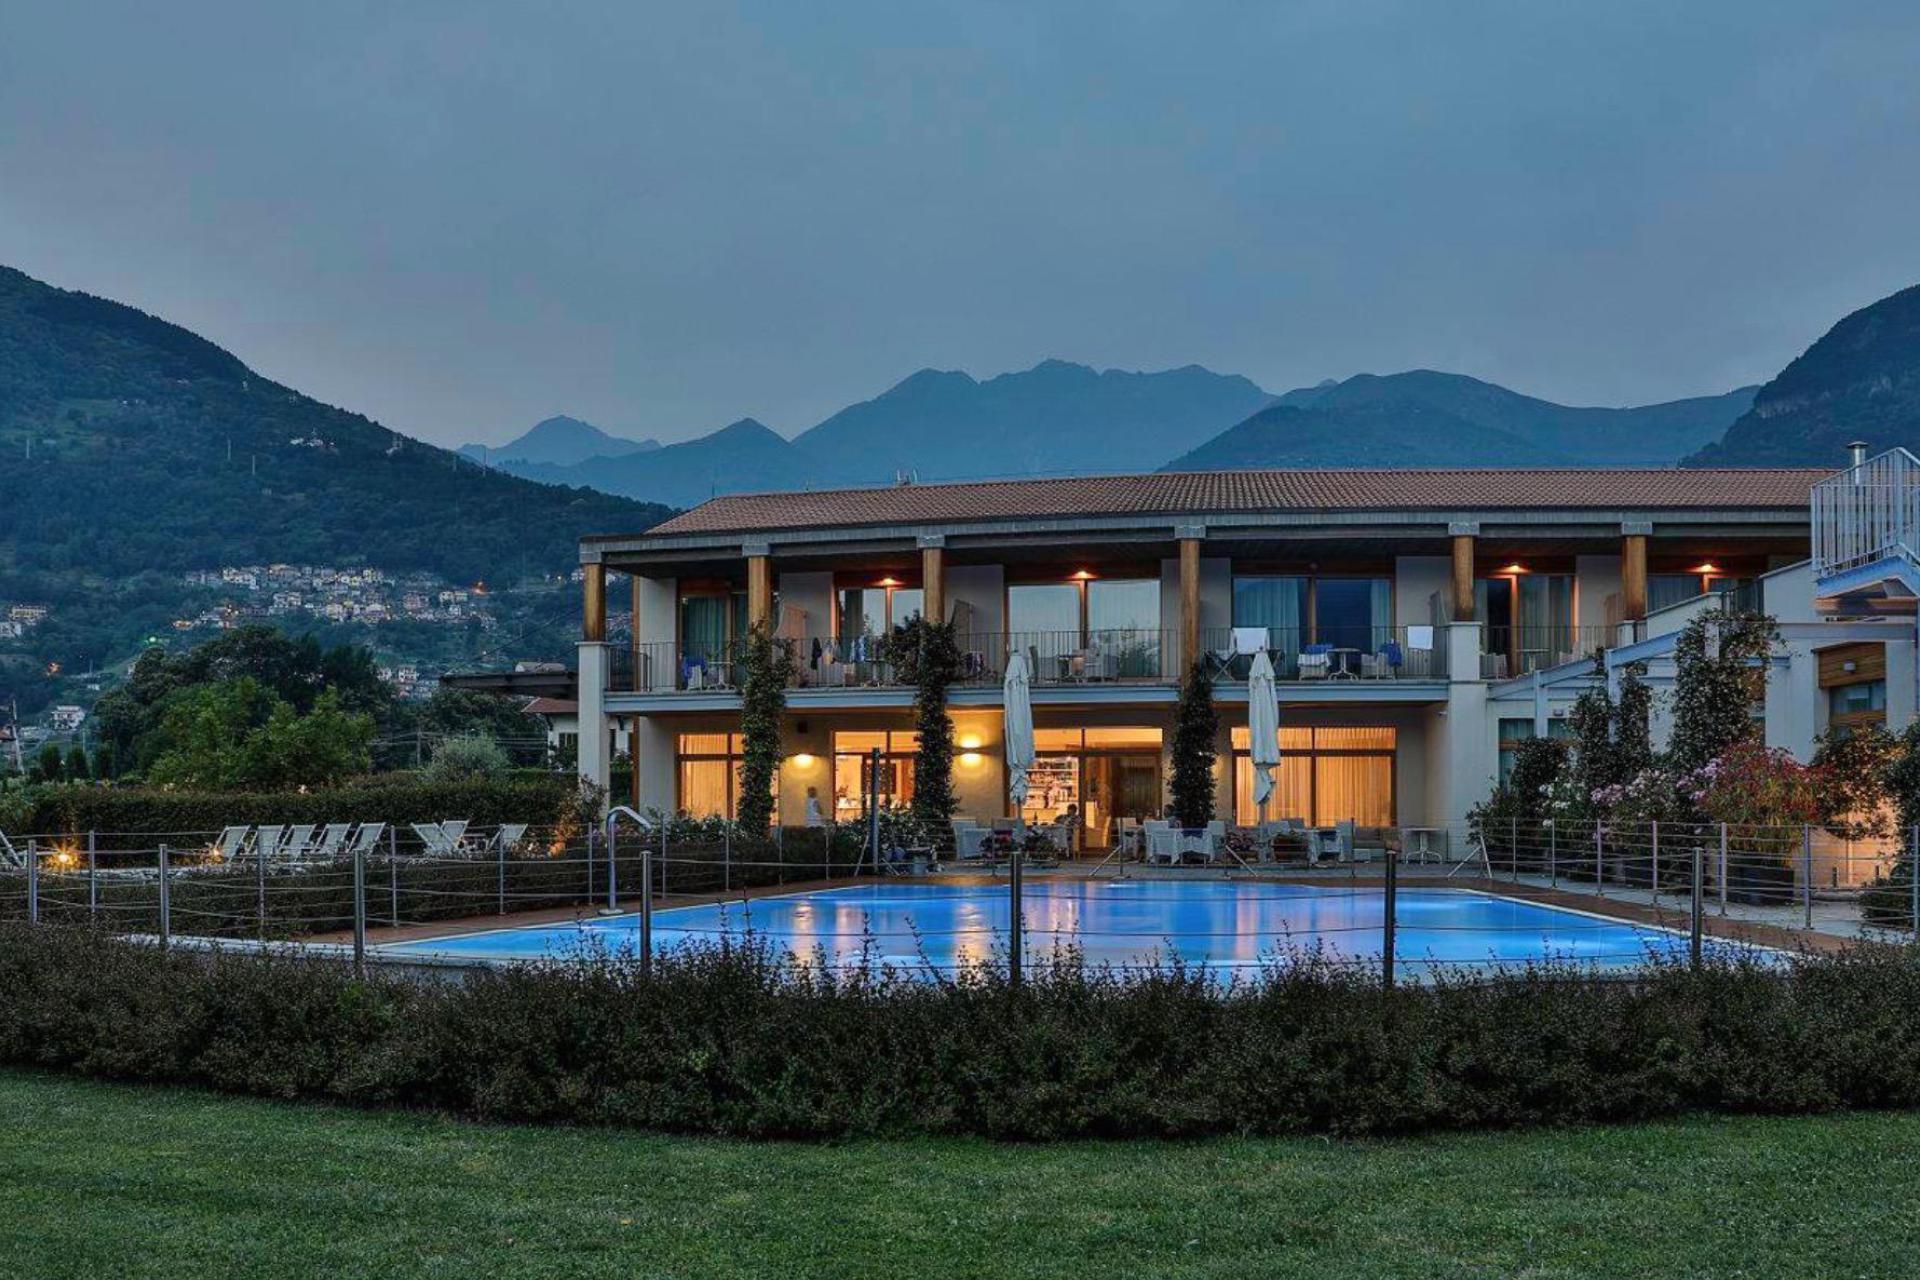 Piccolo hotel di campagna in bella posizione sul lago di Como